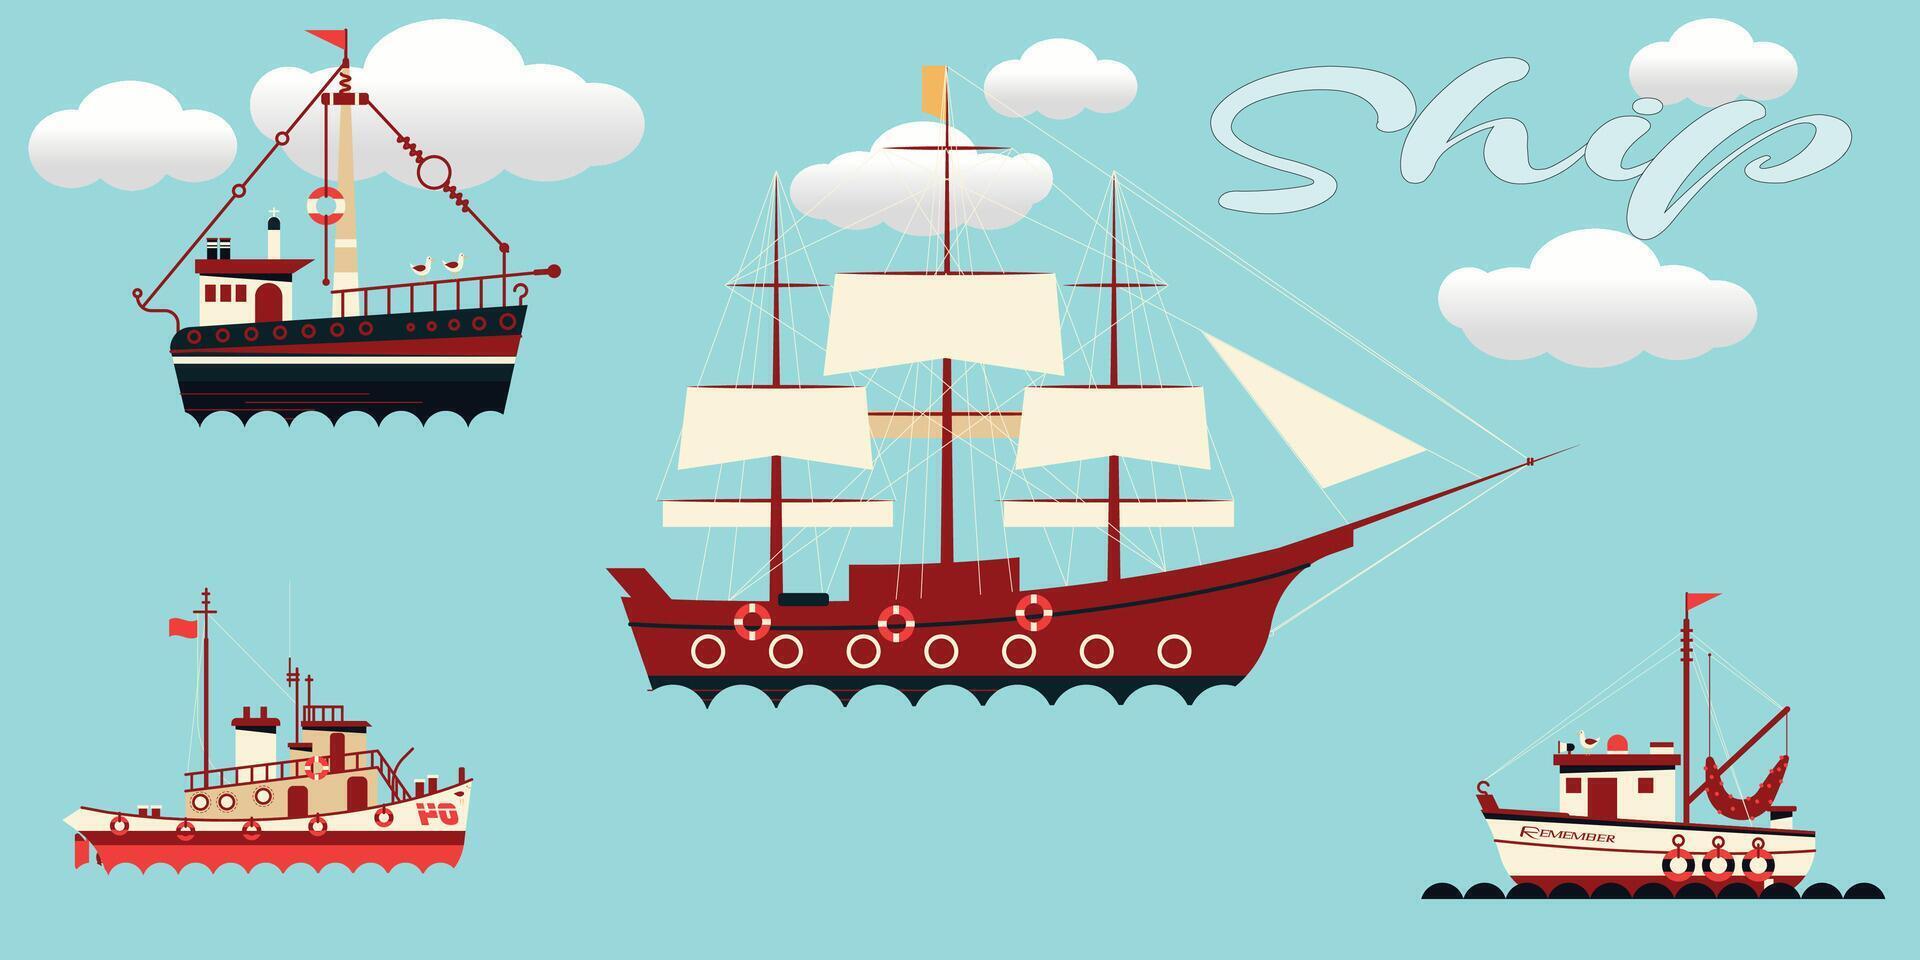 Karikatur Segeln Schiff, Segeln auf das Meer, traditionell uralt Segelboot, genial Vektor Illustration von ein alt Boot oder Schiff